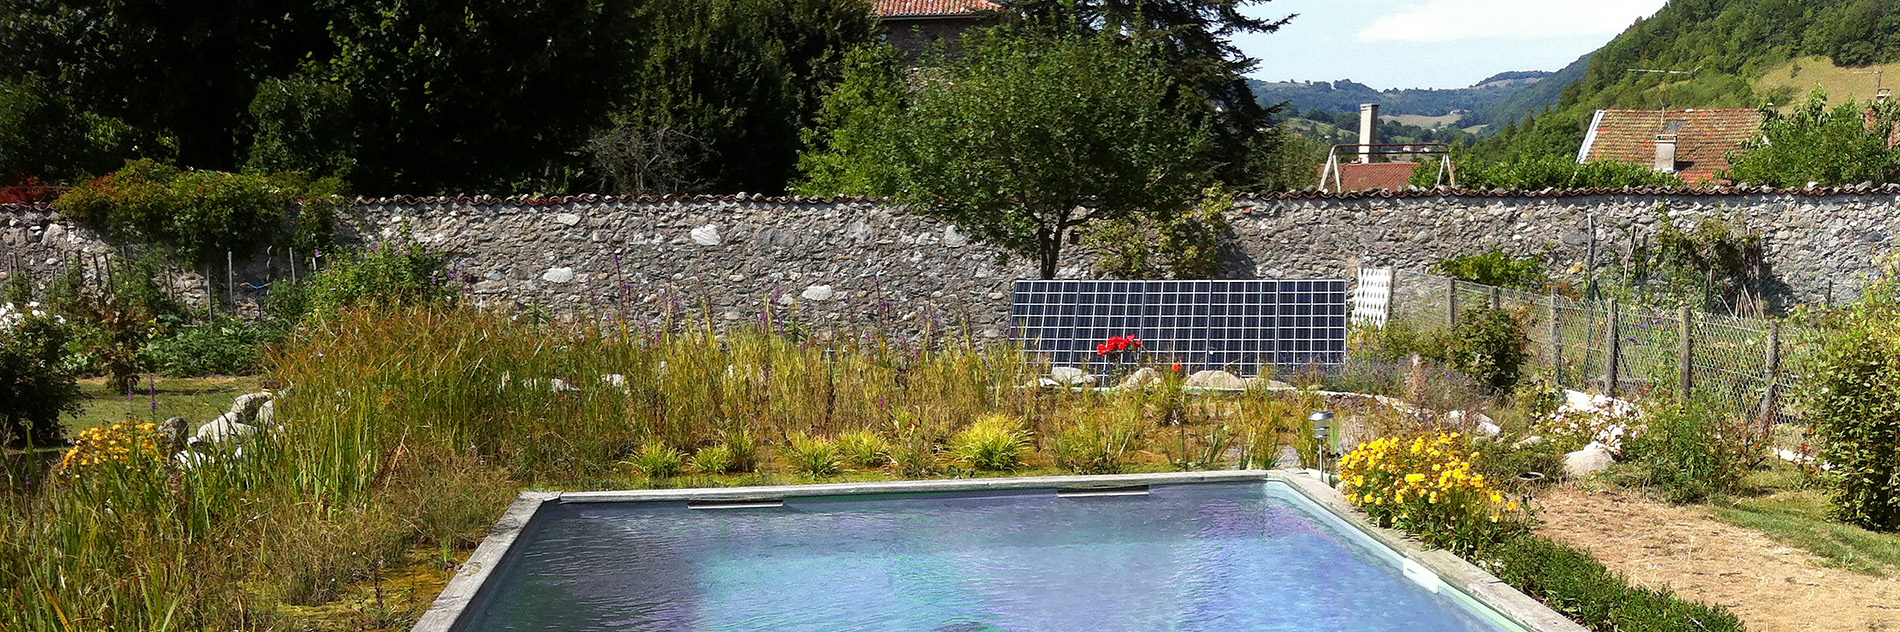 SINES - filtration solaire pour piscine écologique et économique